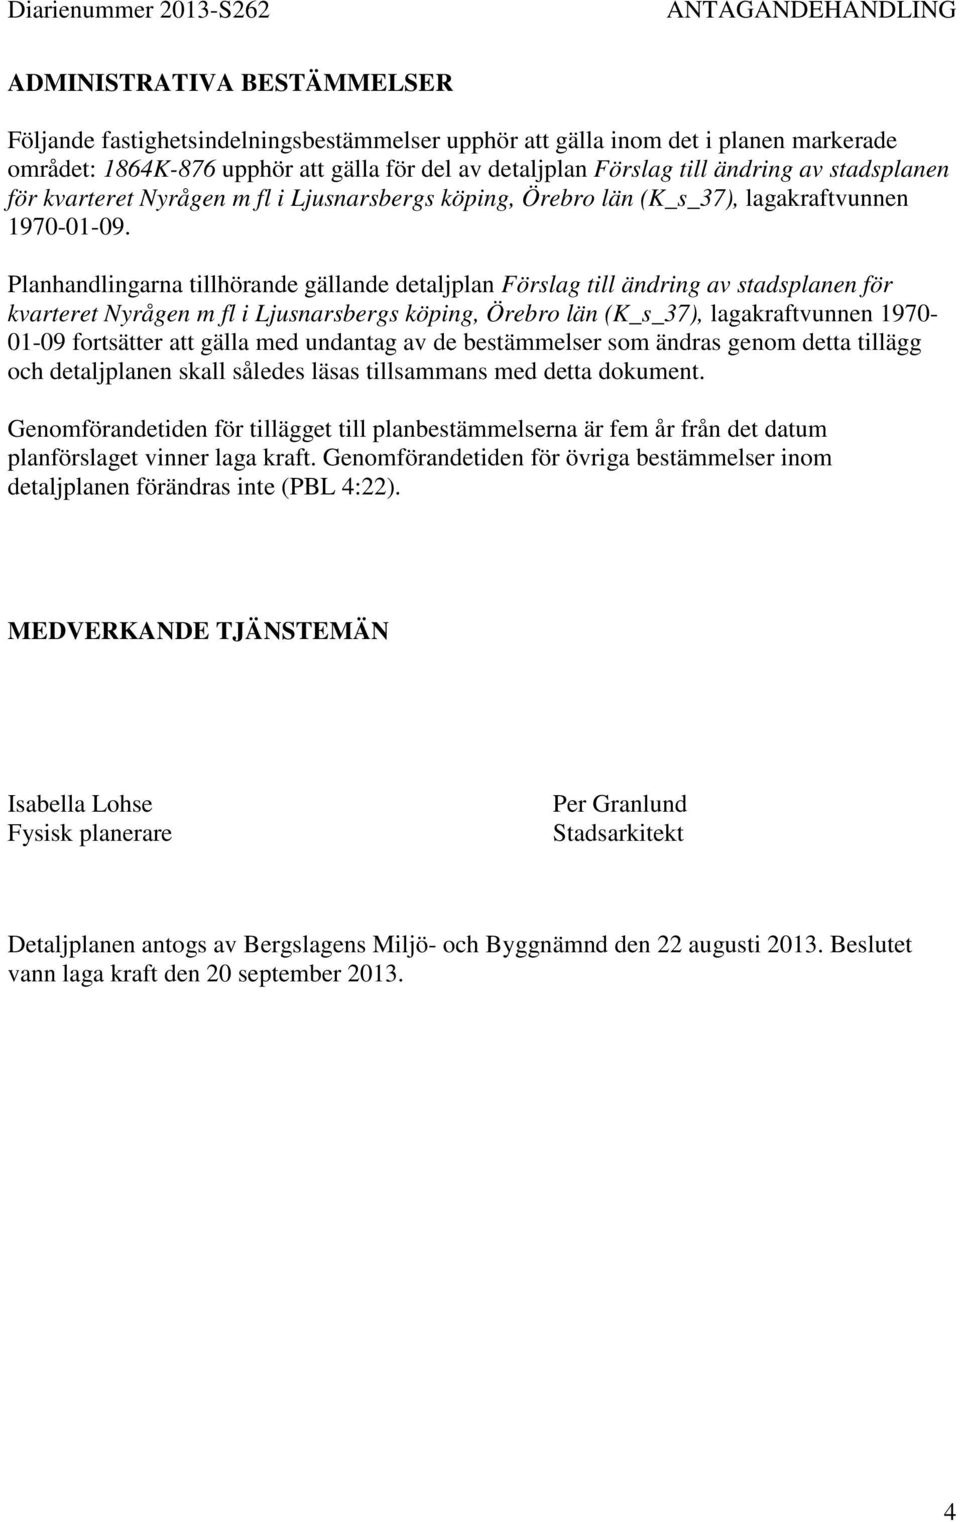 Planhandlingarna tillhörande gällande detaljplan Förslag till ändring av stadsplanen för kvarteret Nyrågen m fl i Ljusnarsbergs köping, Örebro län (K_s_37), lagakraftvunnen 1970-01-09 fortsätter att